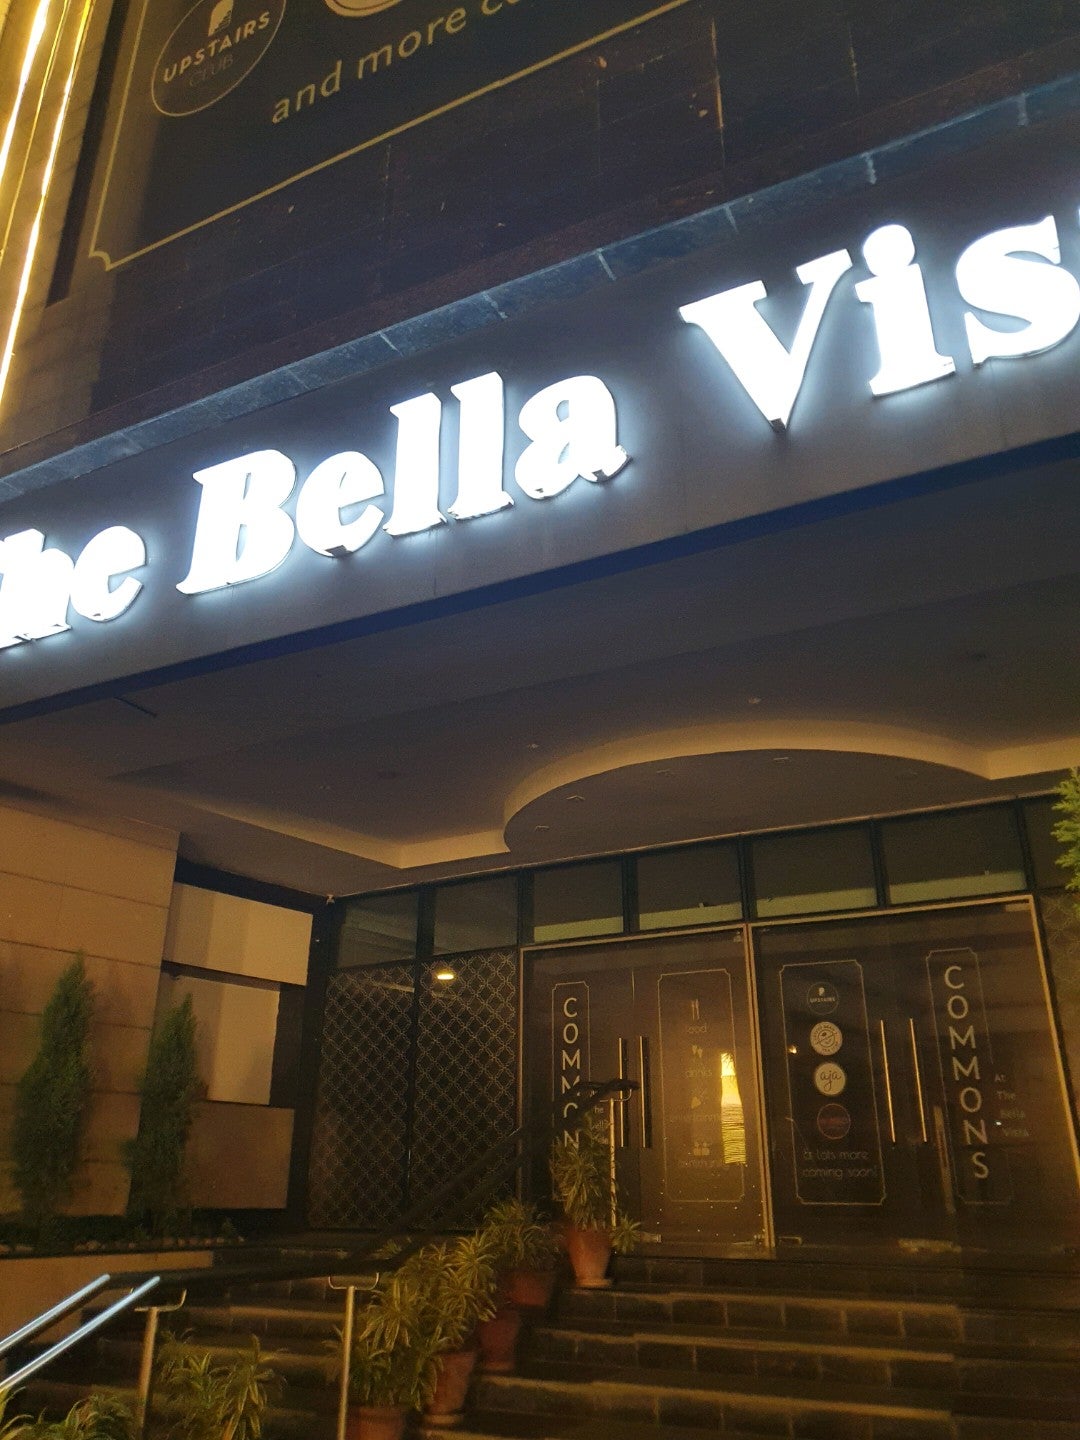 WelcomHotel Bella Vista